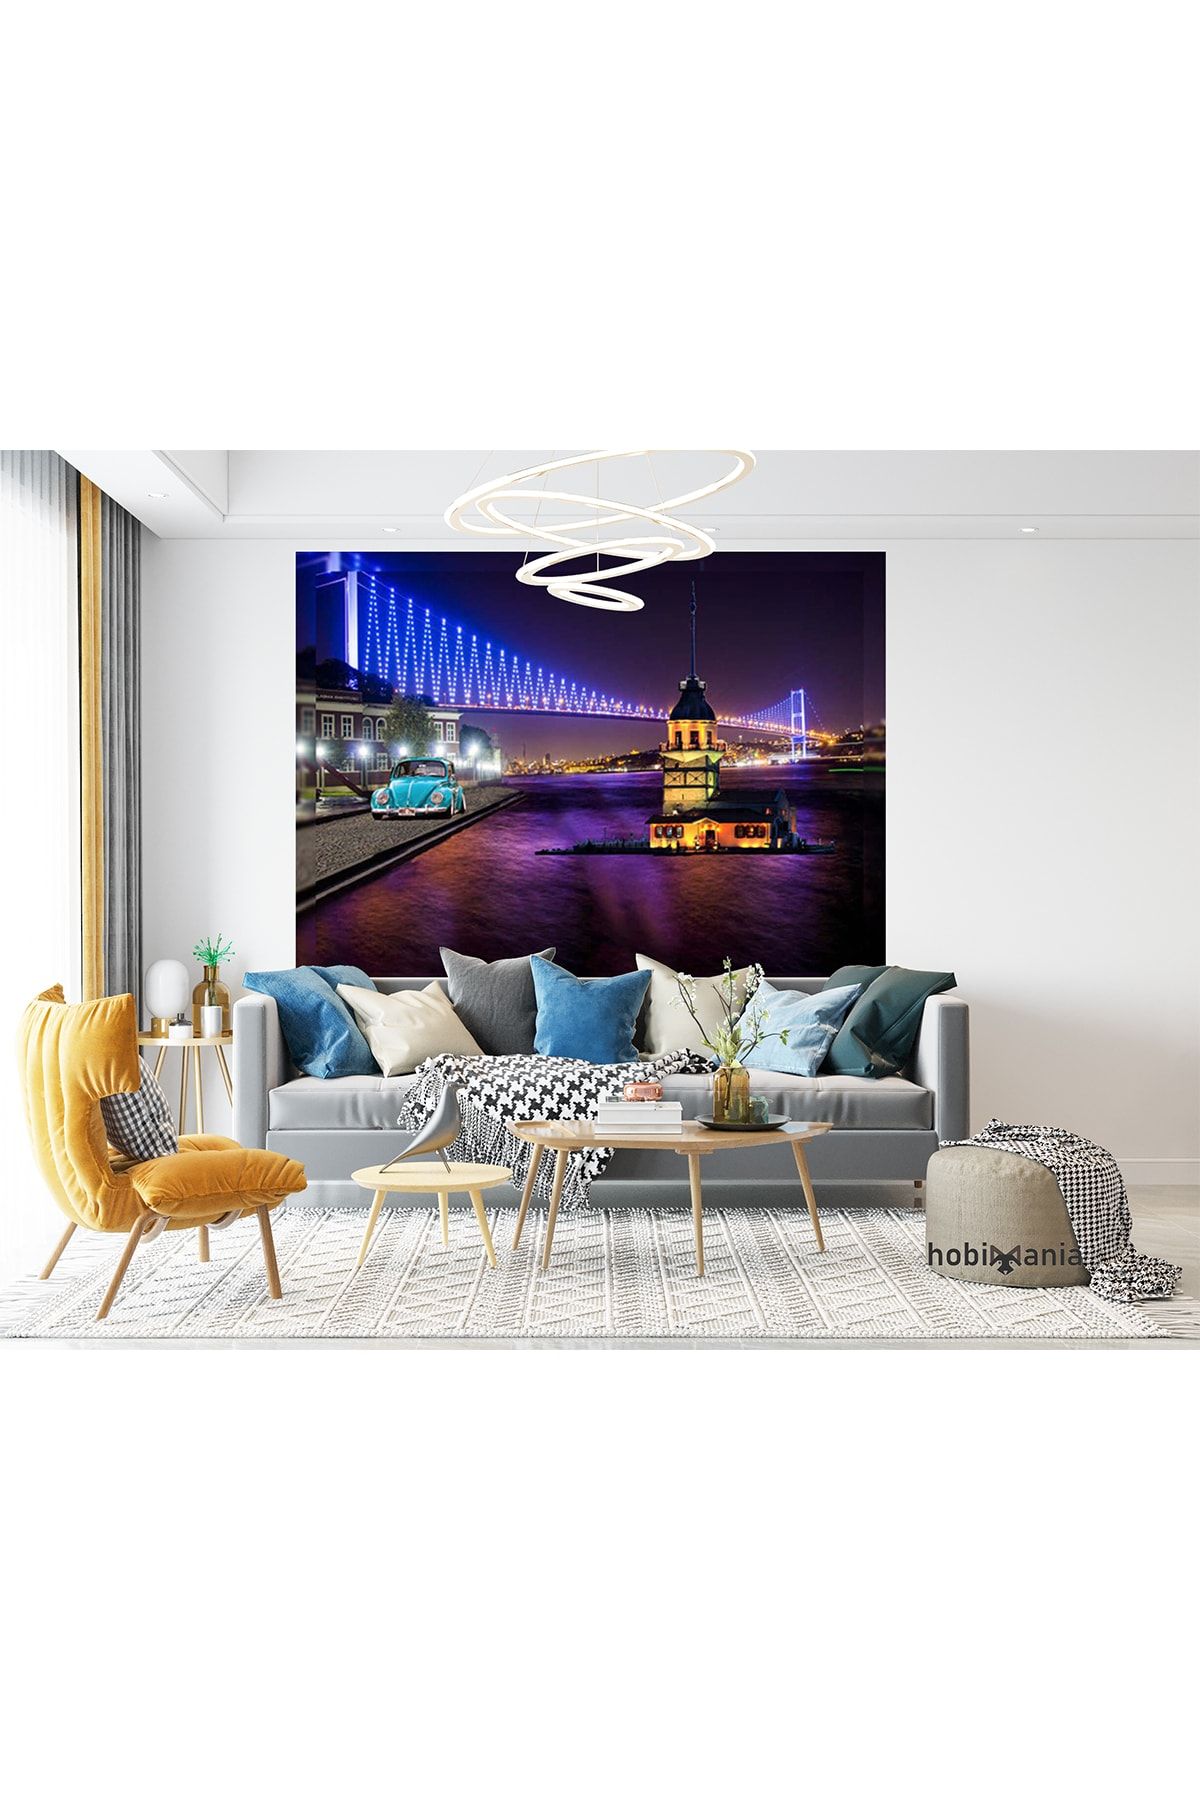 Hobimania Kanvas Tablo Boğaz Köprüsü Kız Kulesi Vosvos Led Işıklı 50x100 cm Duvar Dekorasyon Tablo Moda